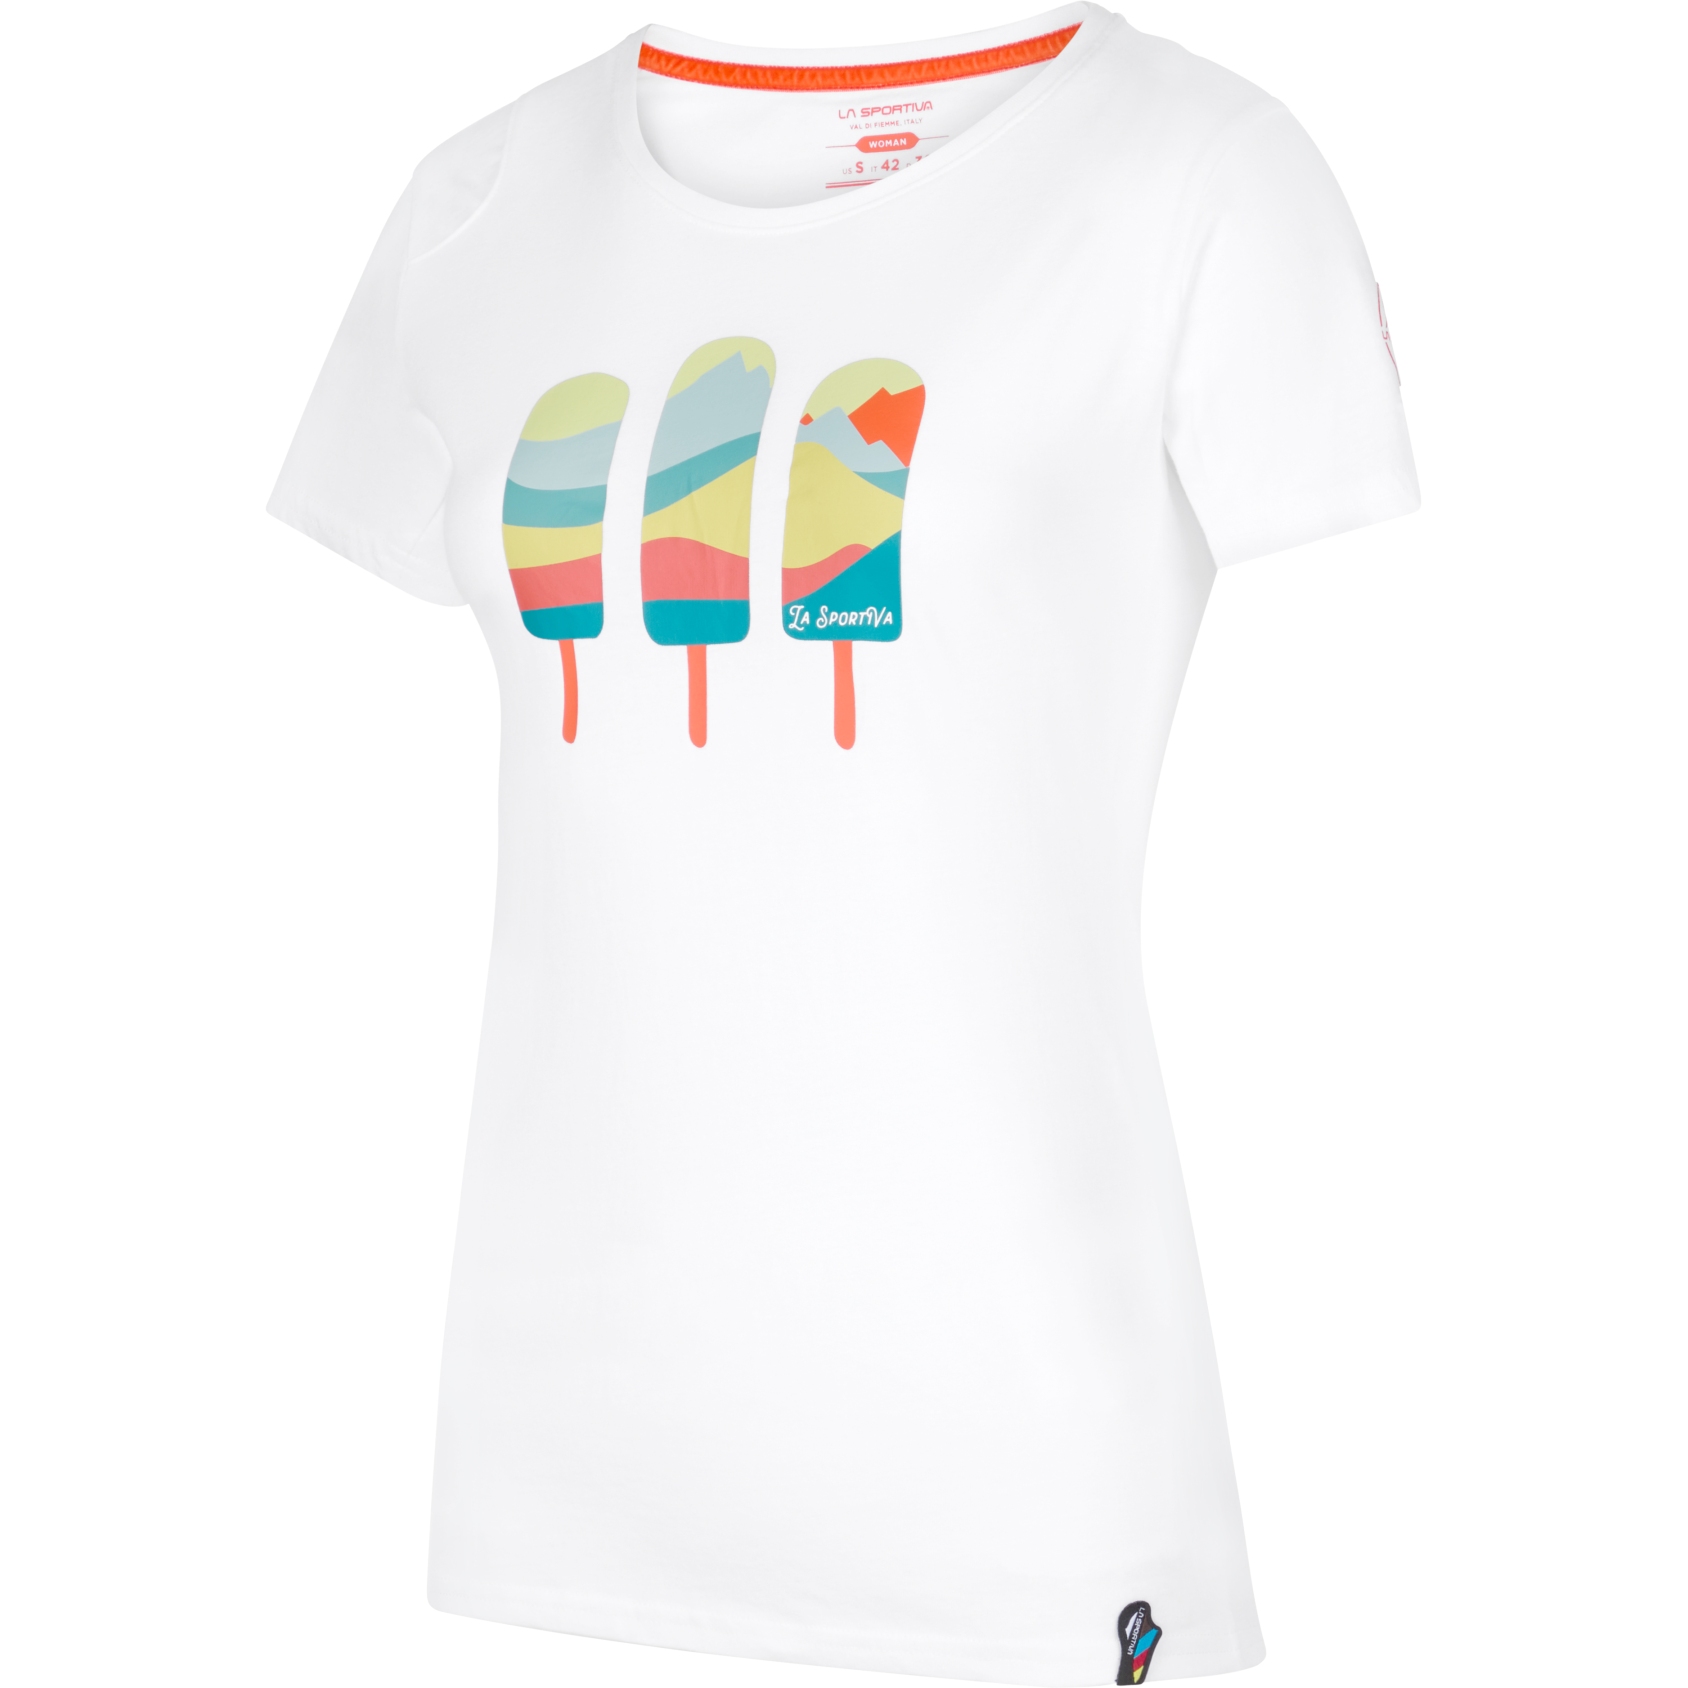 Produktbild von La Sportiva Icy Mountains T-Shirt Damen - Weiß